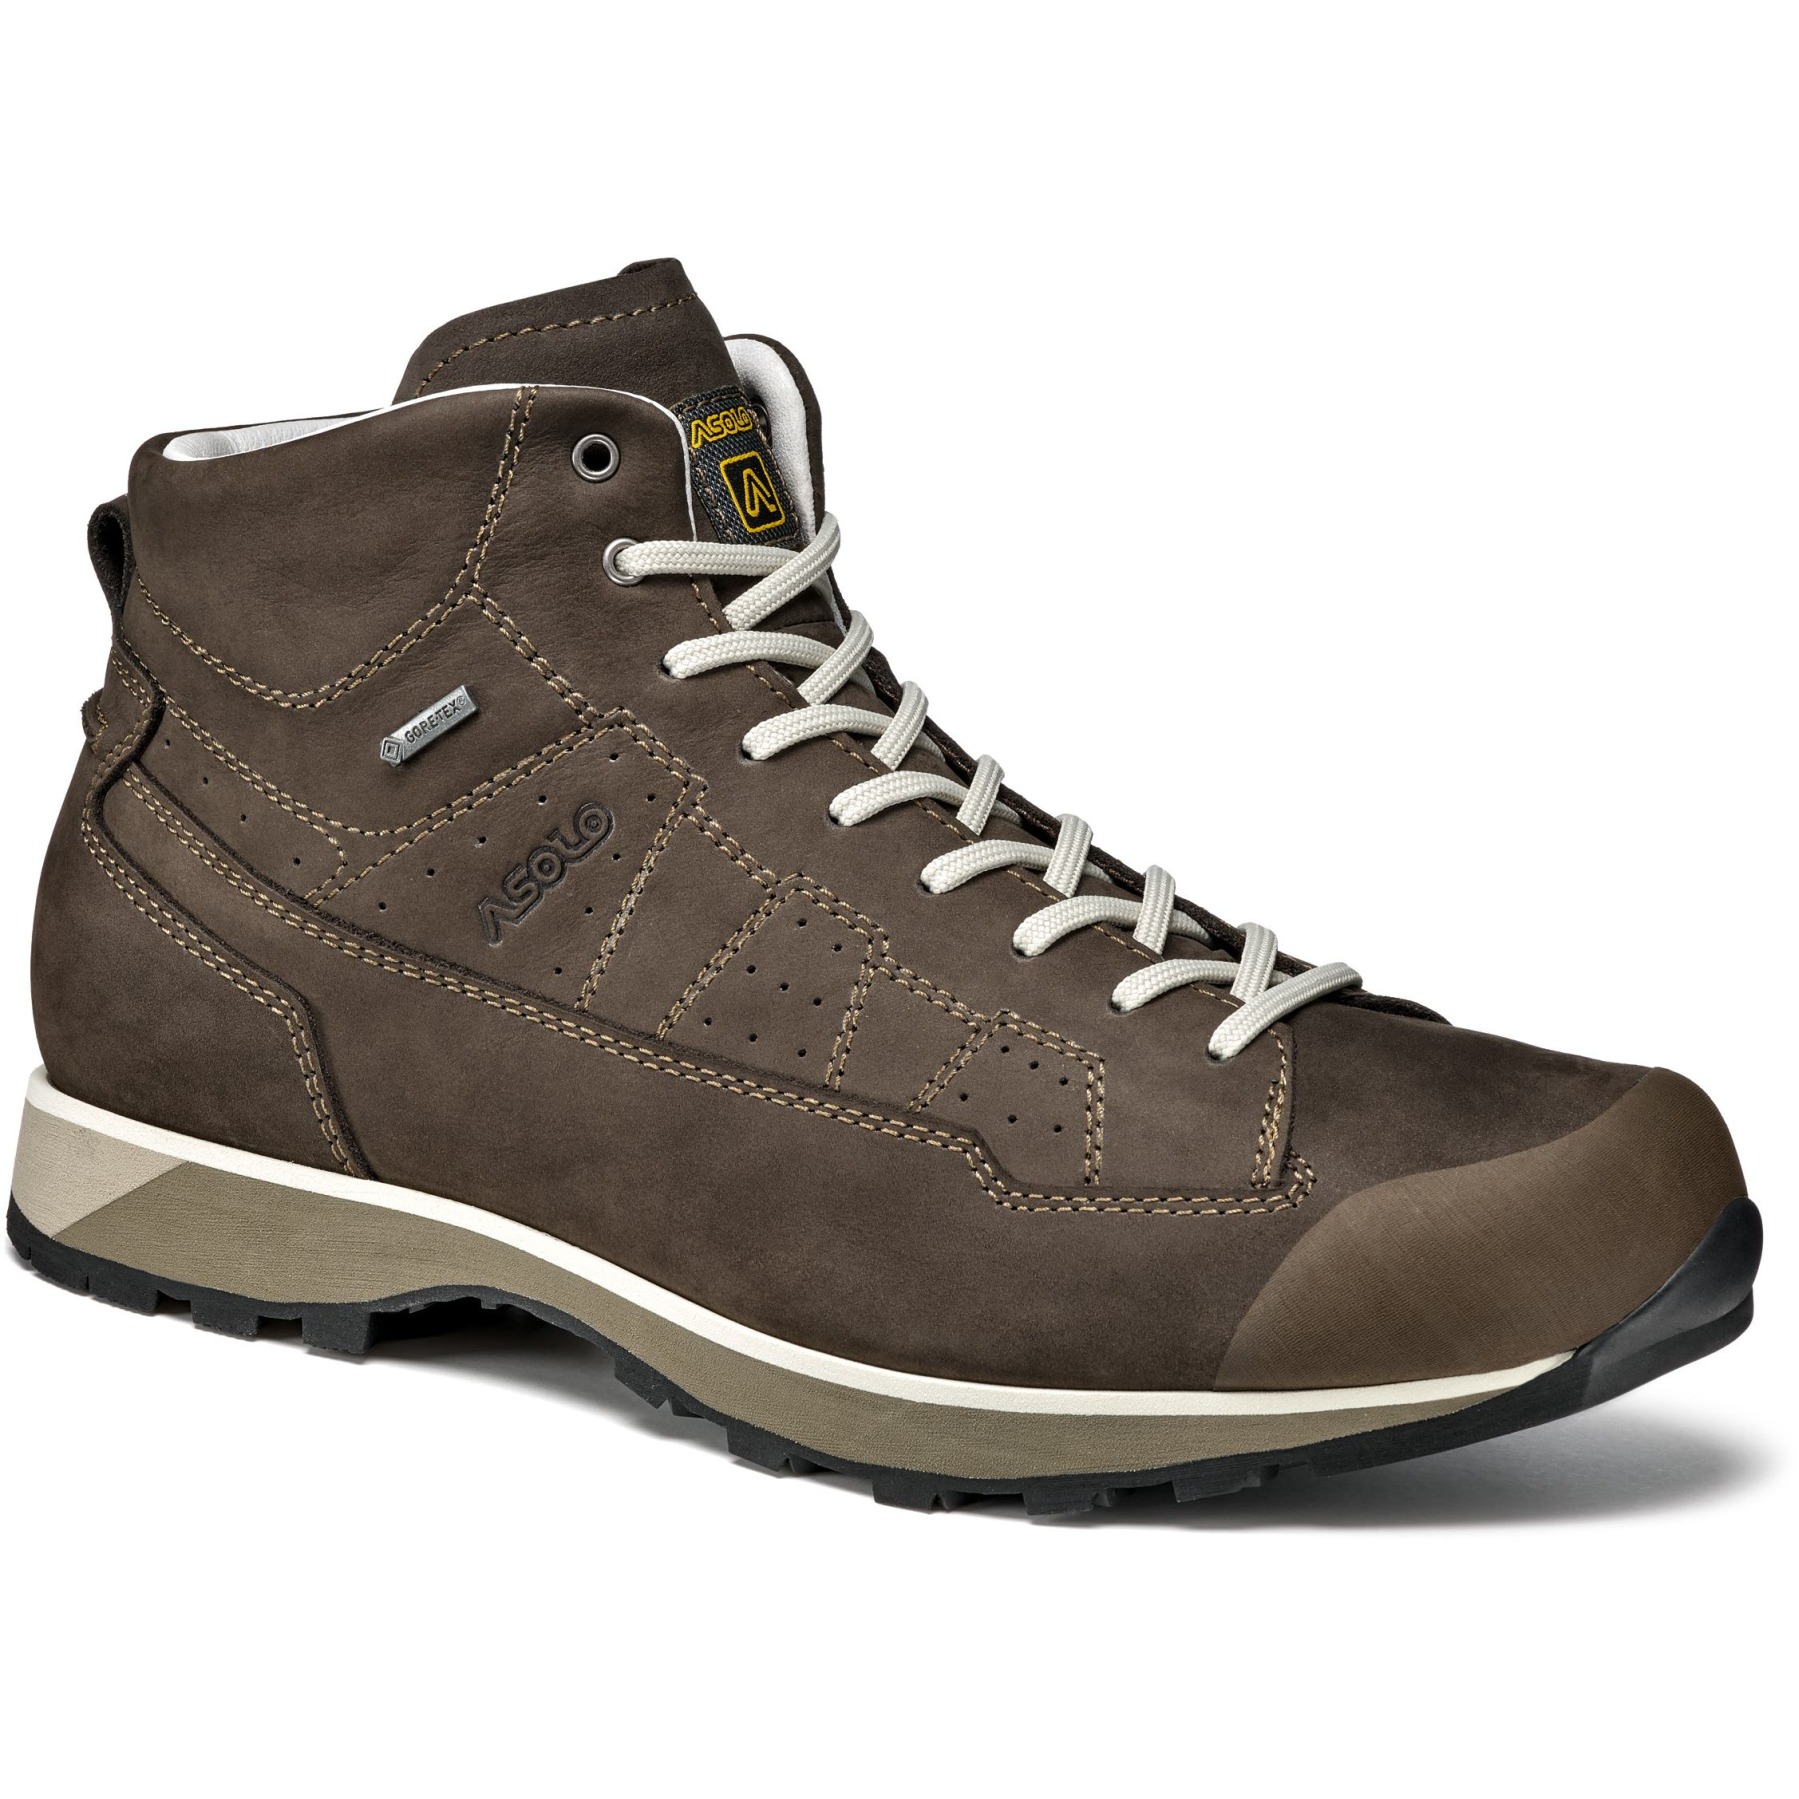 Produktbild von Asolo Active GV MM Schuhe Herren - Dark Brown